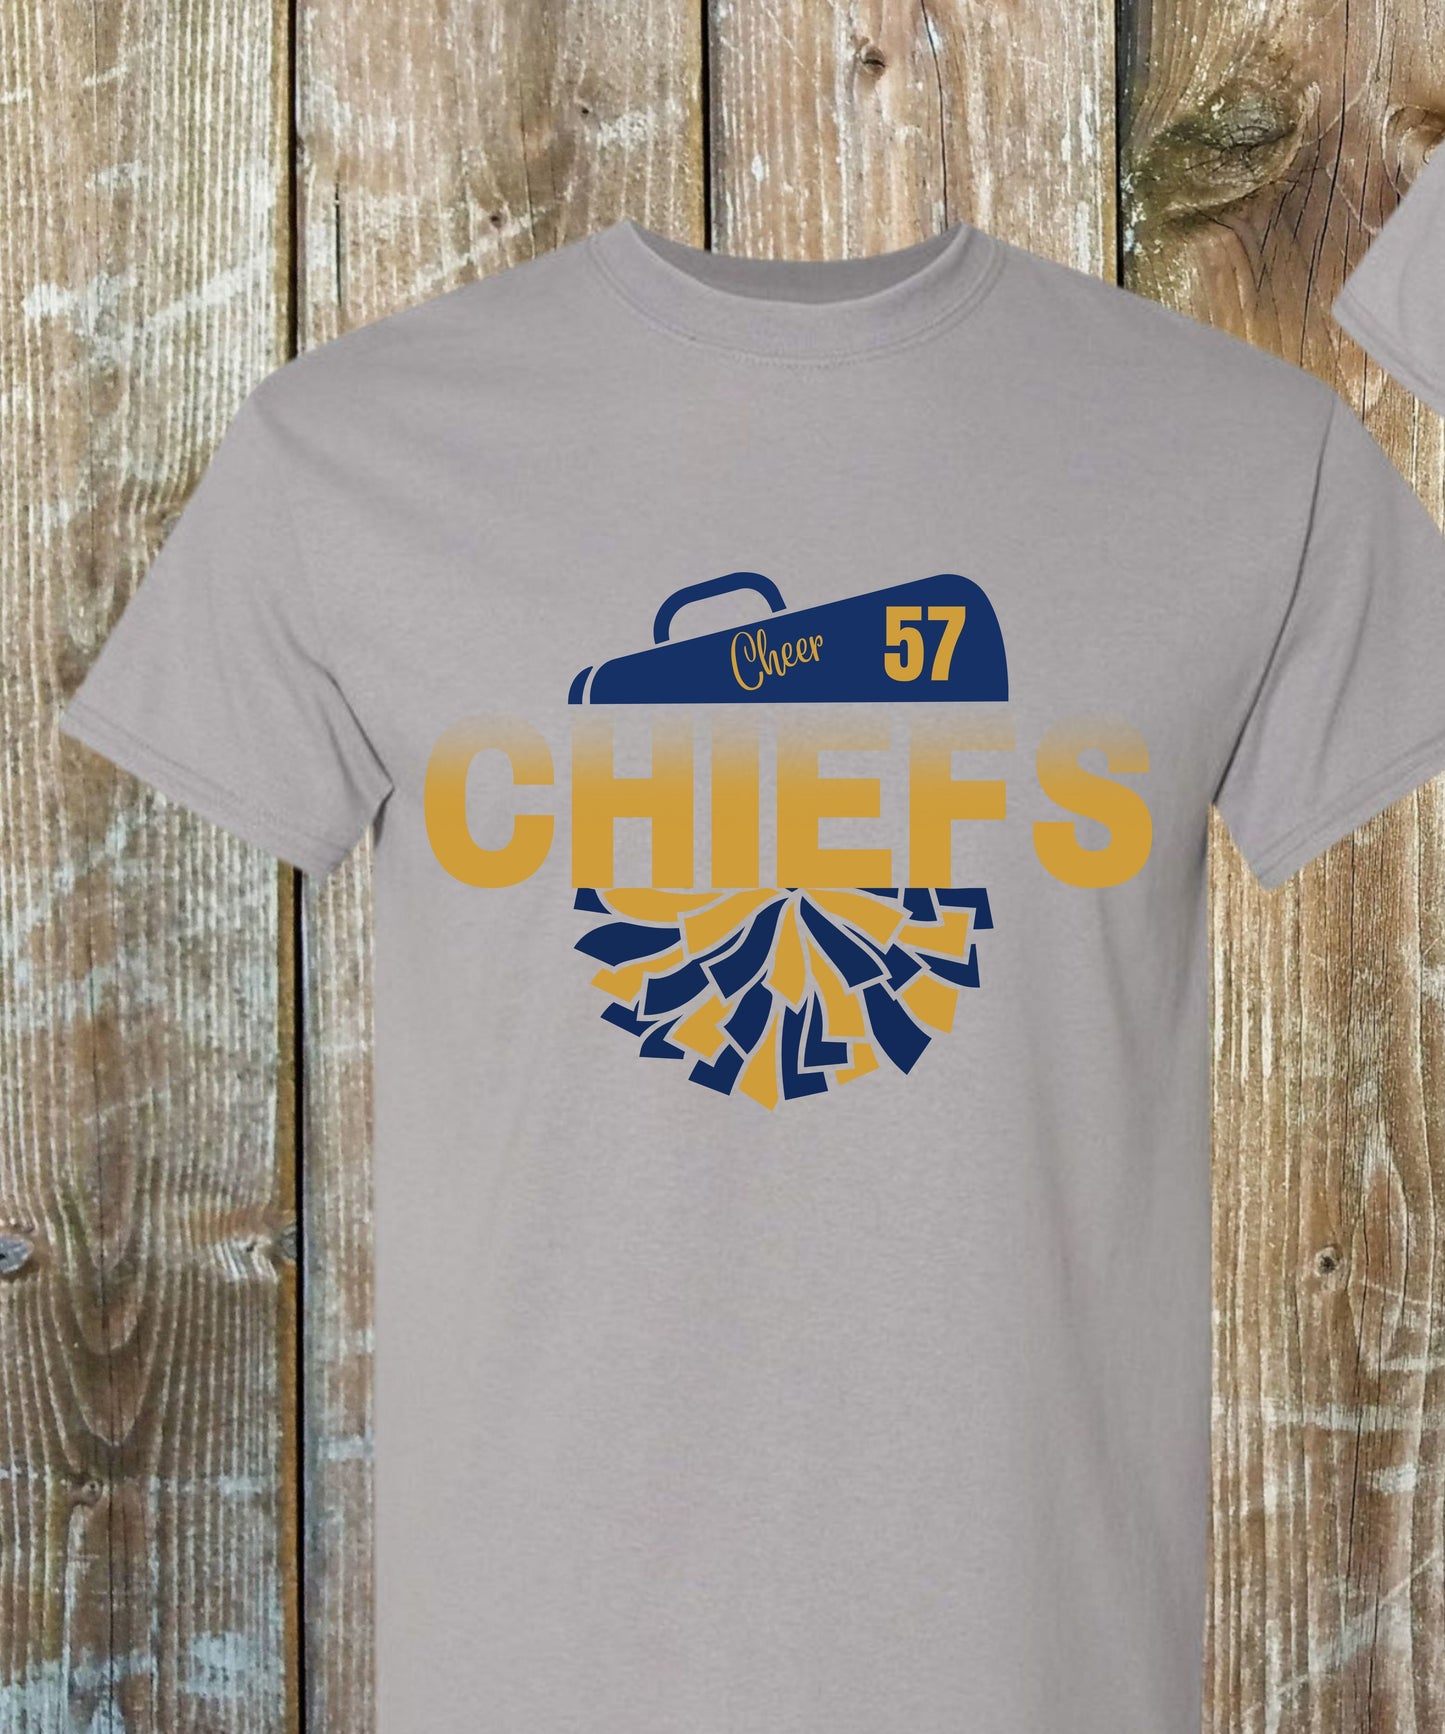 57 Cheer Shirts